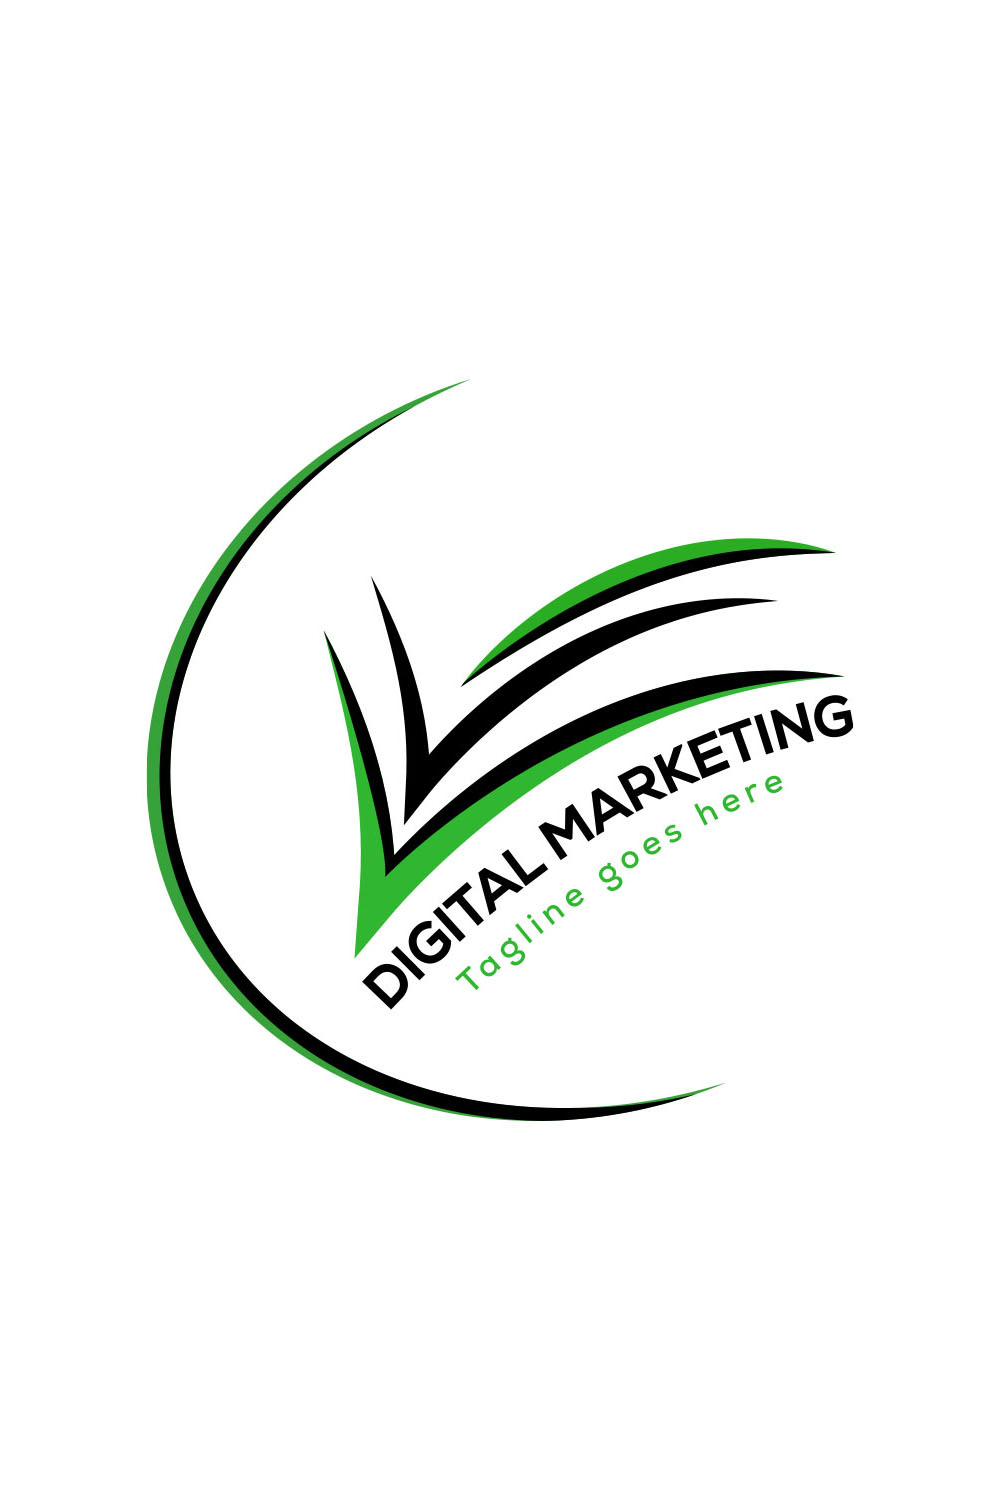 Unique Digital Marketing Logo - pinterest image preview.